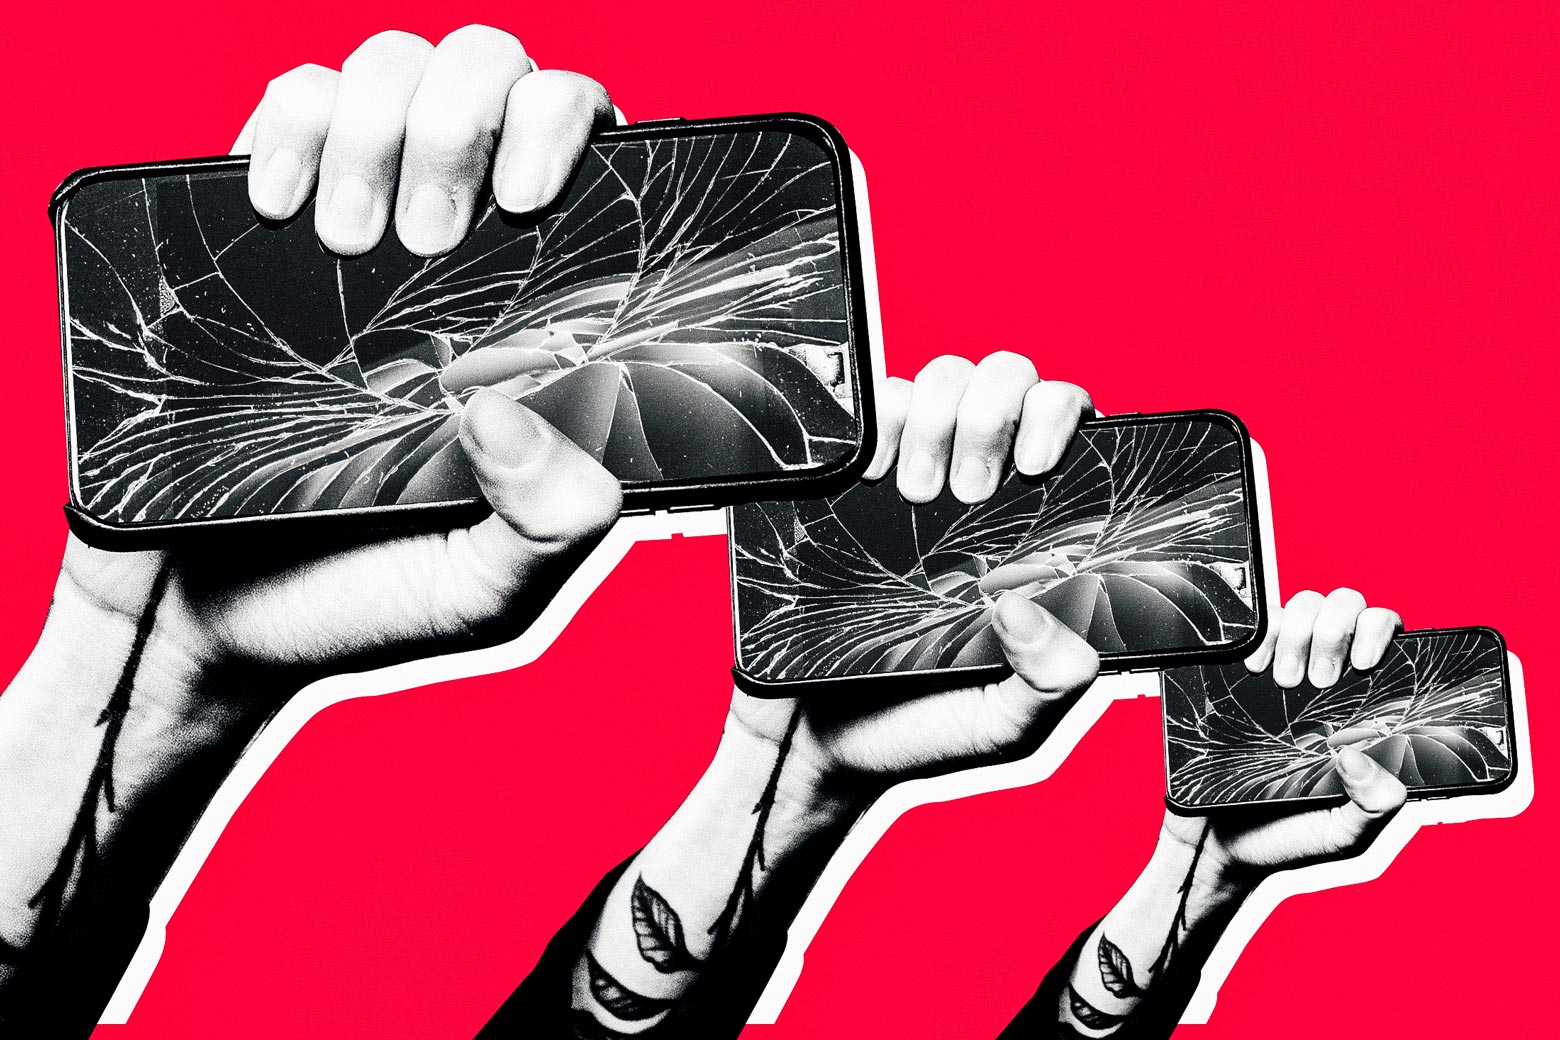 Revolutionary hands holding broken iPhones.